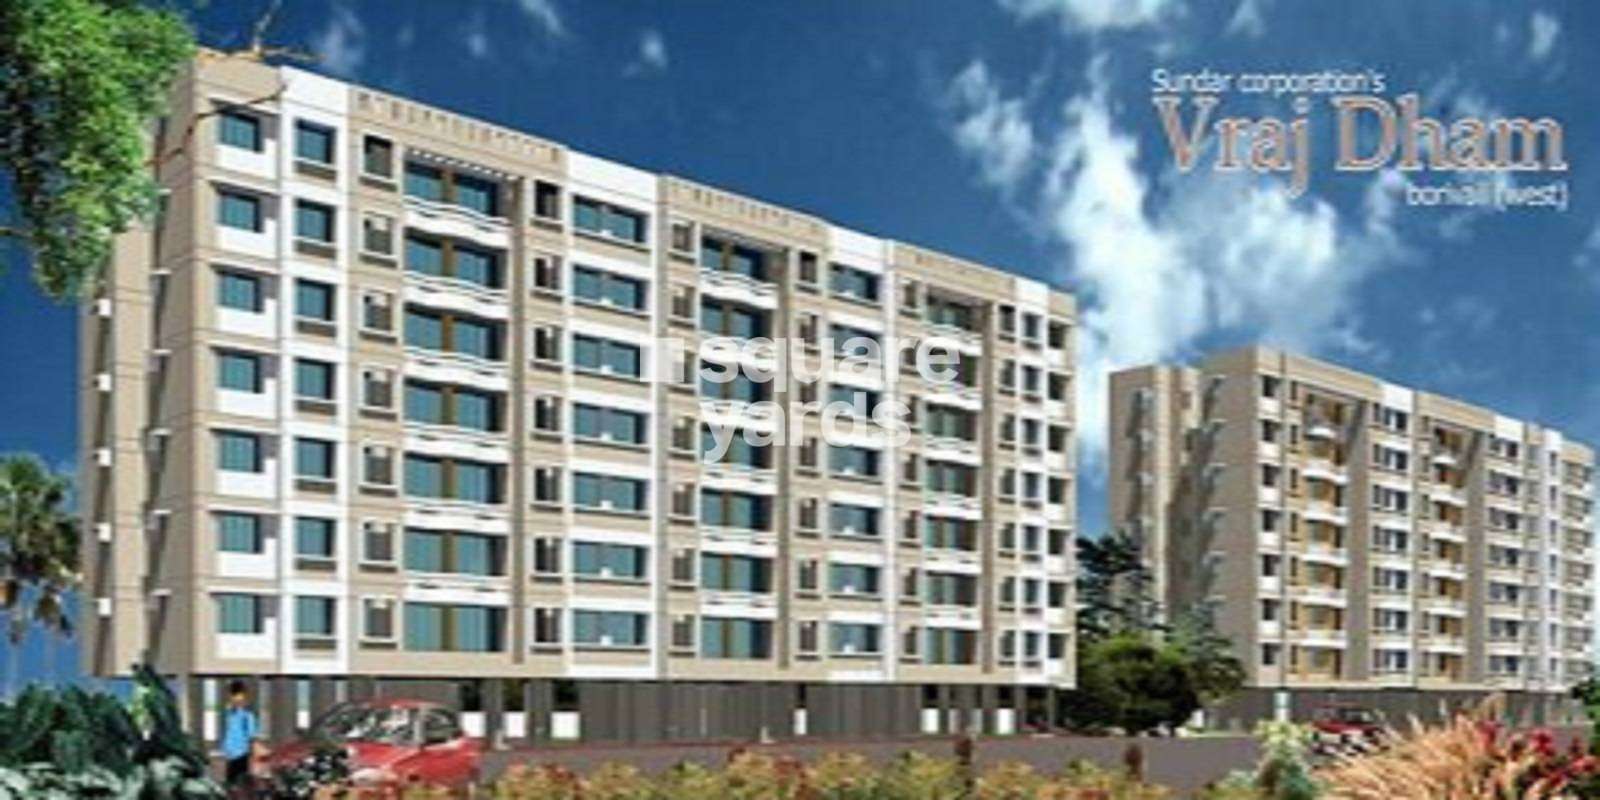 Vrajdham Apartment Cover Image